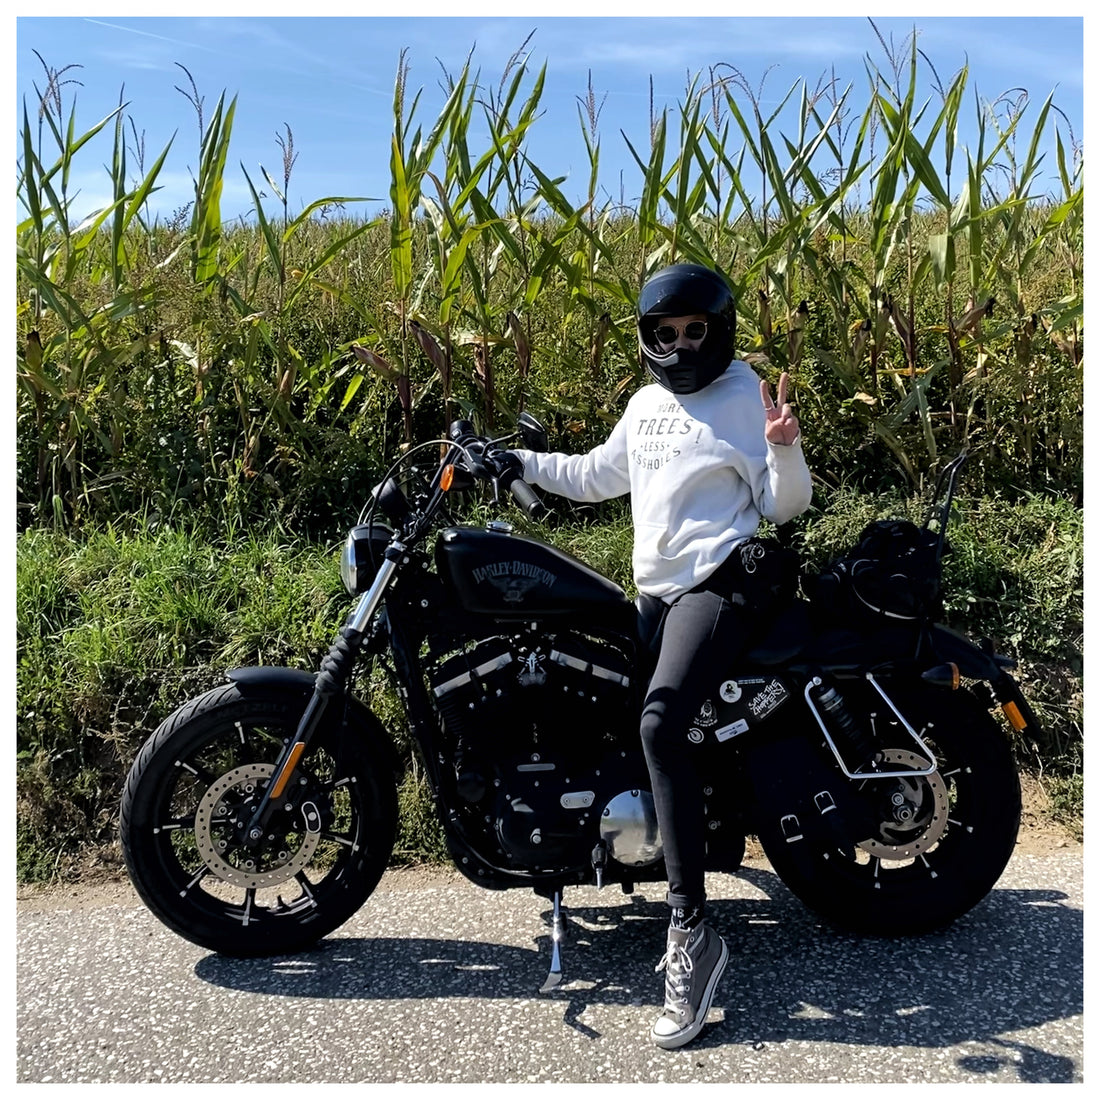 Femme Rider Alex feels Badass on her Harley